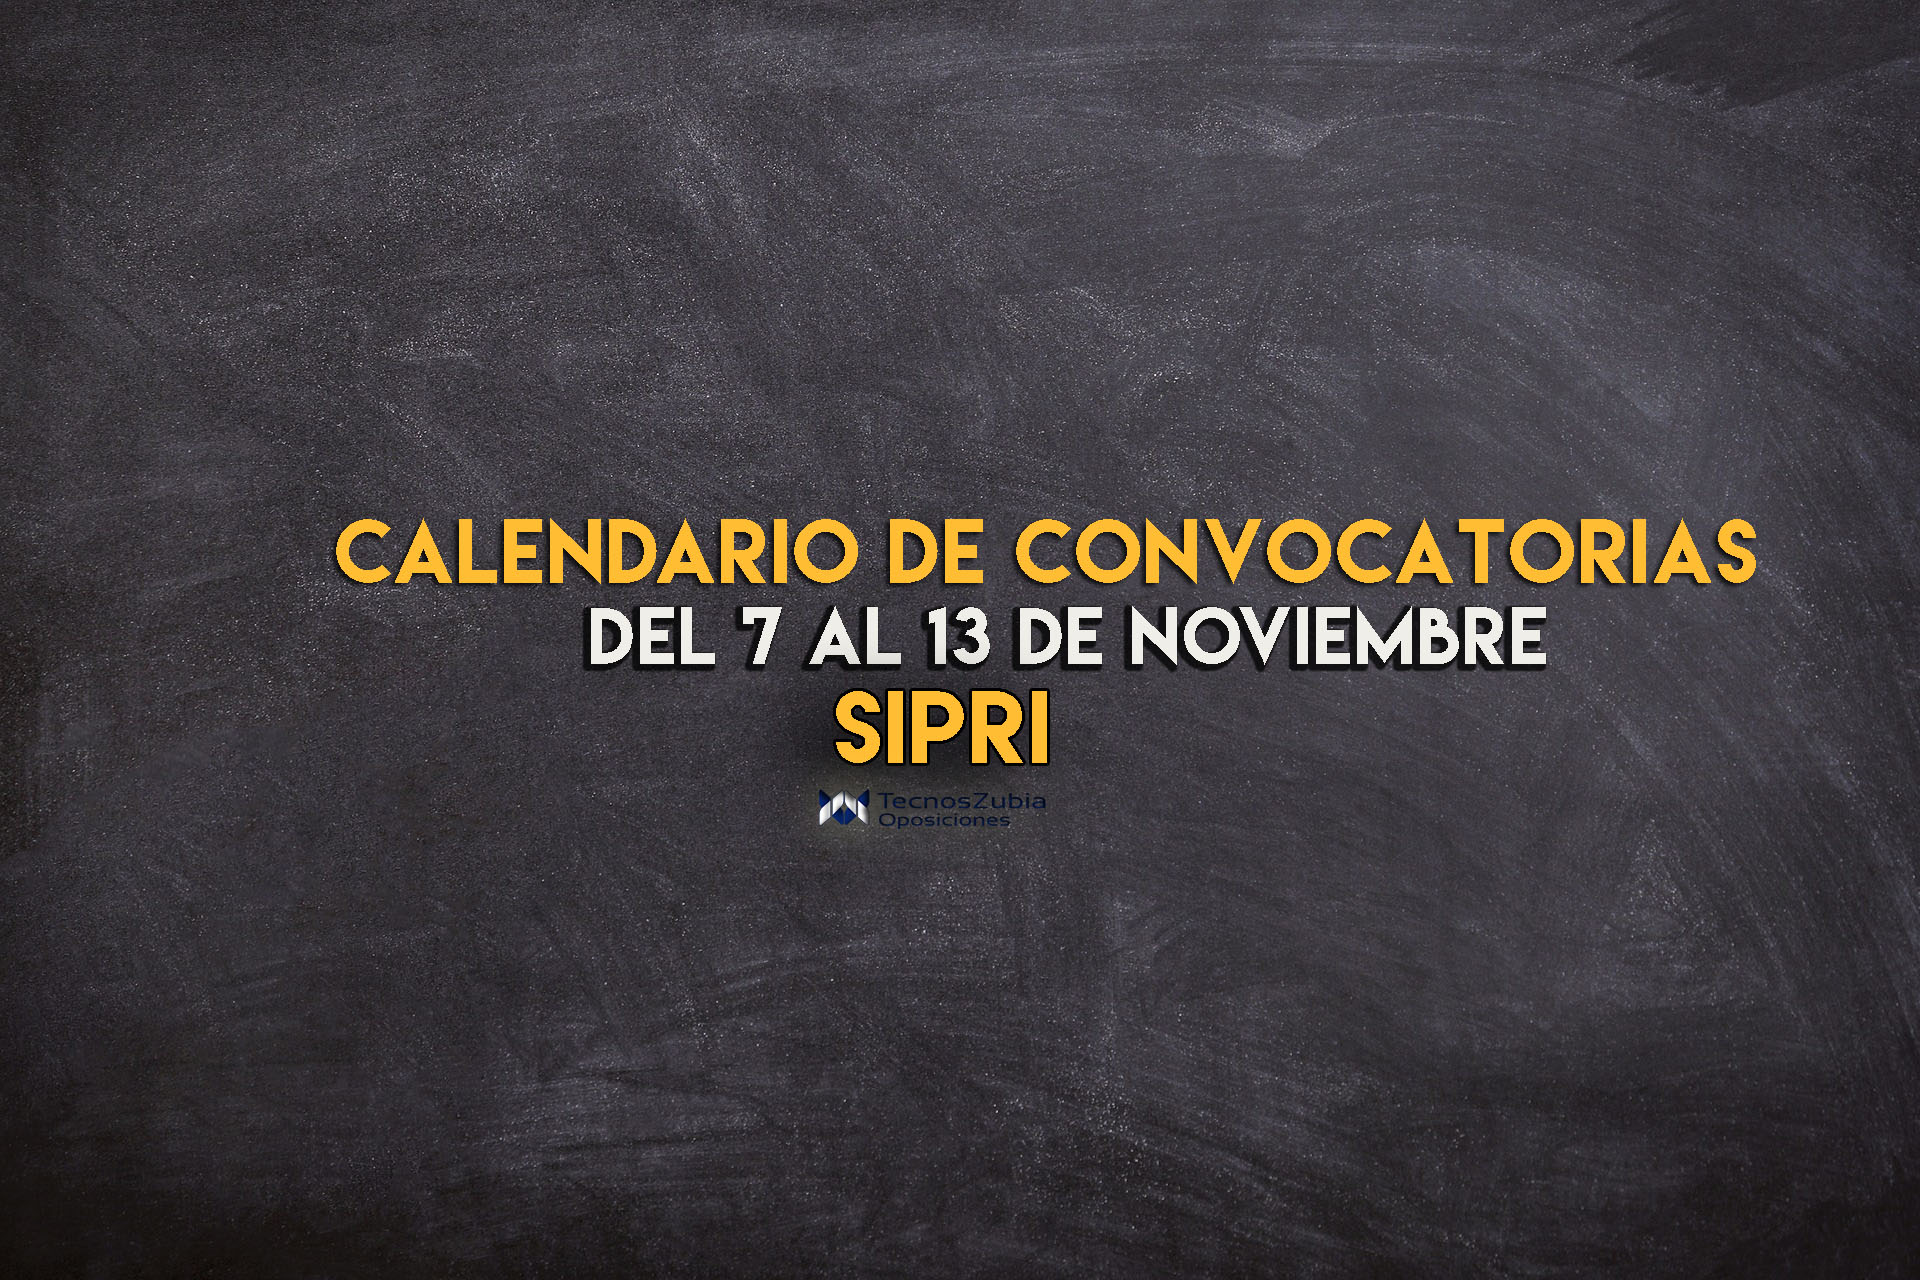 Calendario convocatorias SIPRI 7-13 noviembre